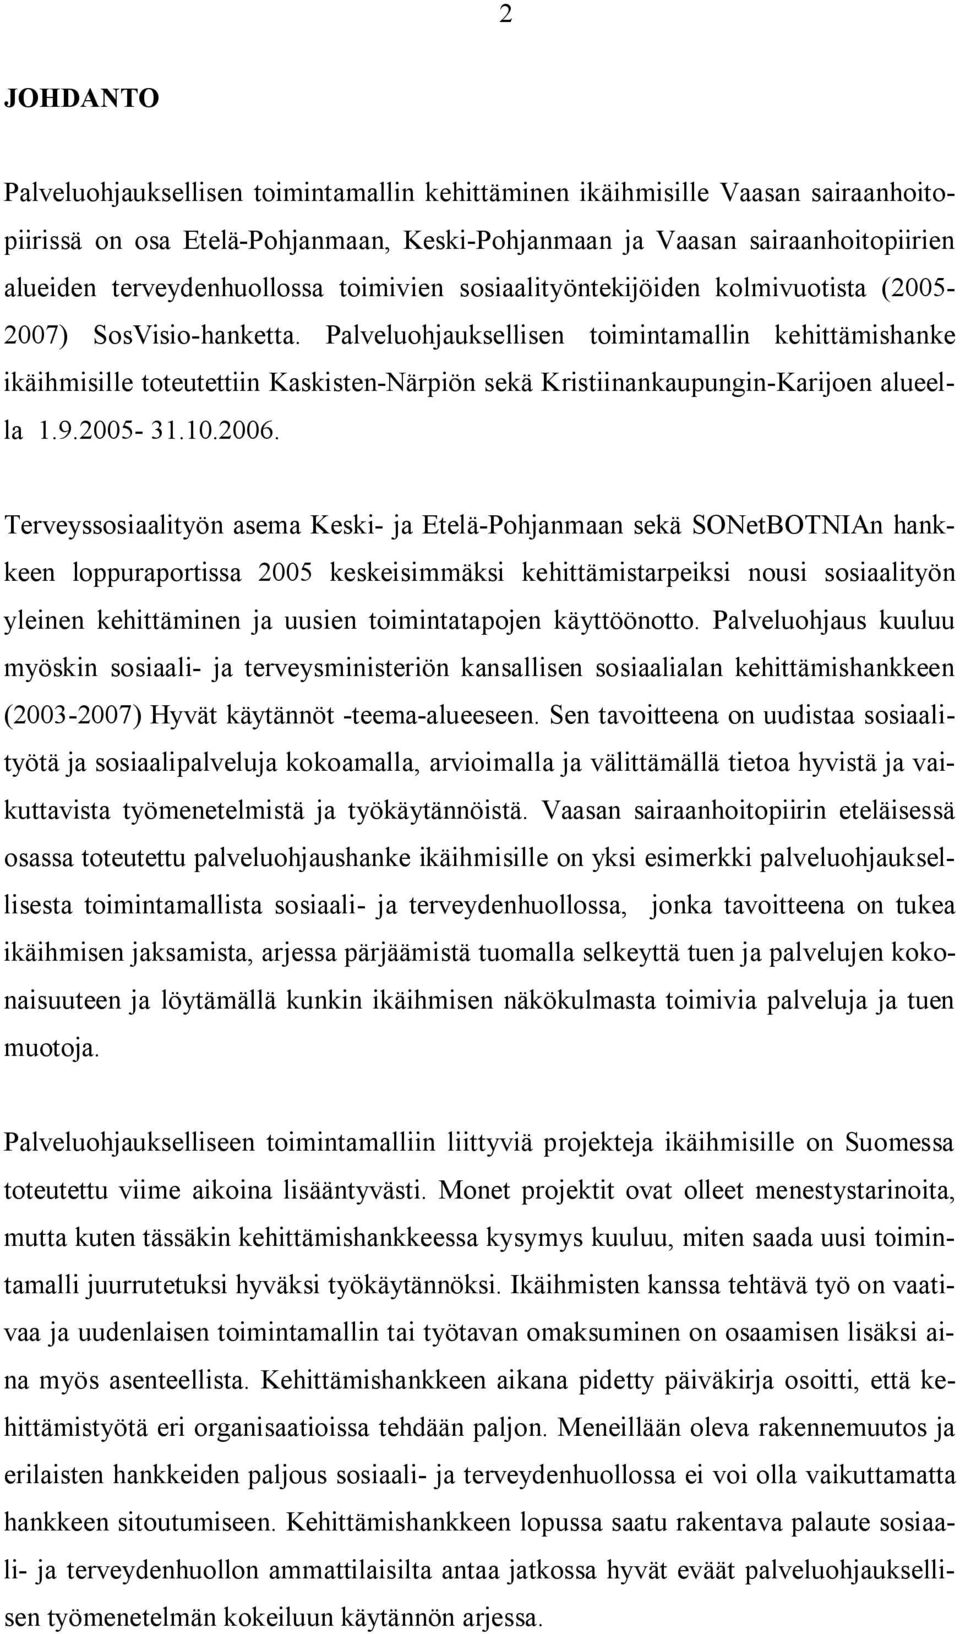 Palveluohjauksellisen toimintamallin kehittämishanke ikäihmisille toteutettiin Kaskisten-Närpiön sekä Kristiinankaupungin-Karijoen alueella 1.9.2005-31.10.2006.